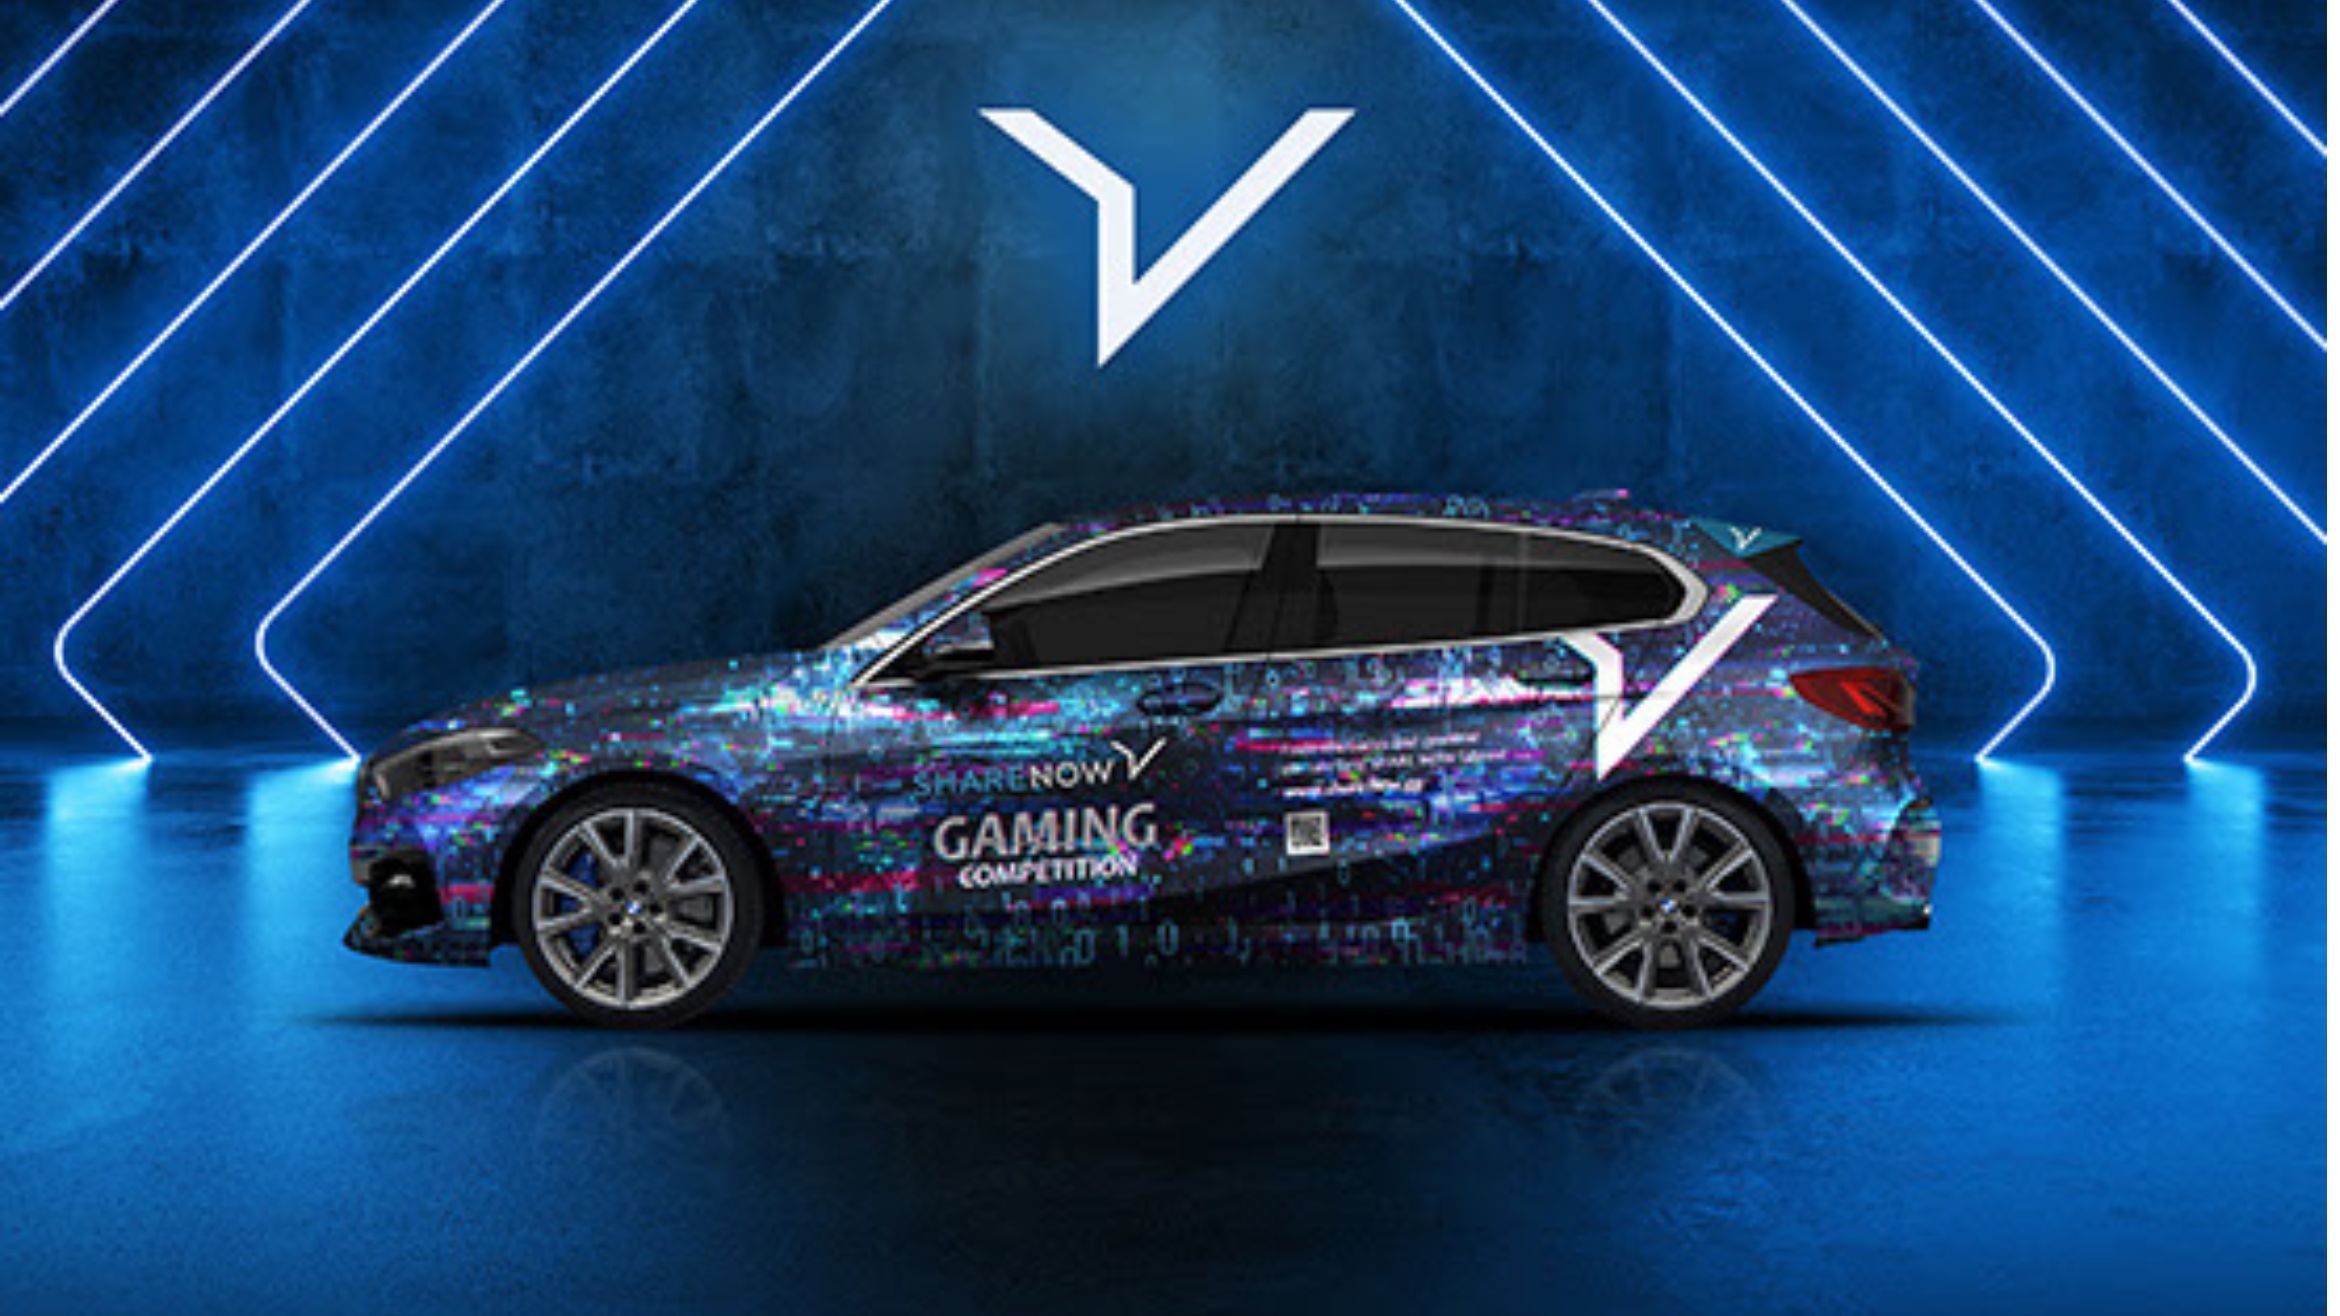 Share Now-Fahrzeug in einem Sonderdesign zum Gaming – 